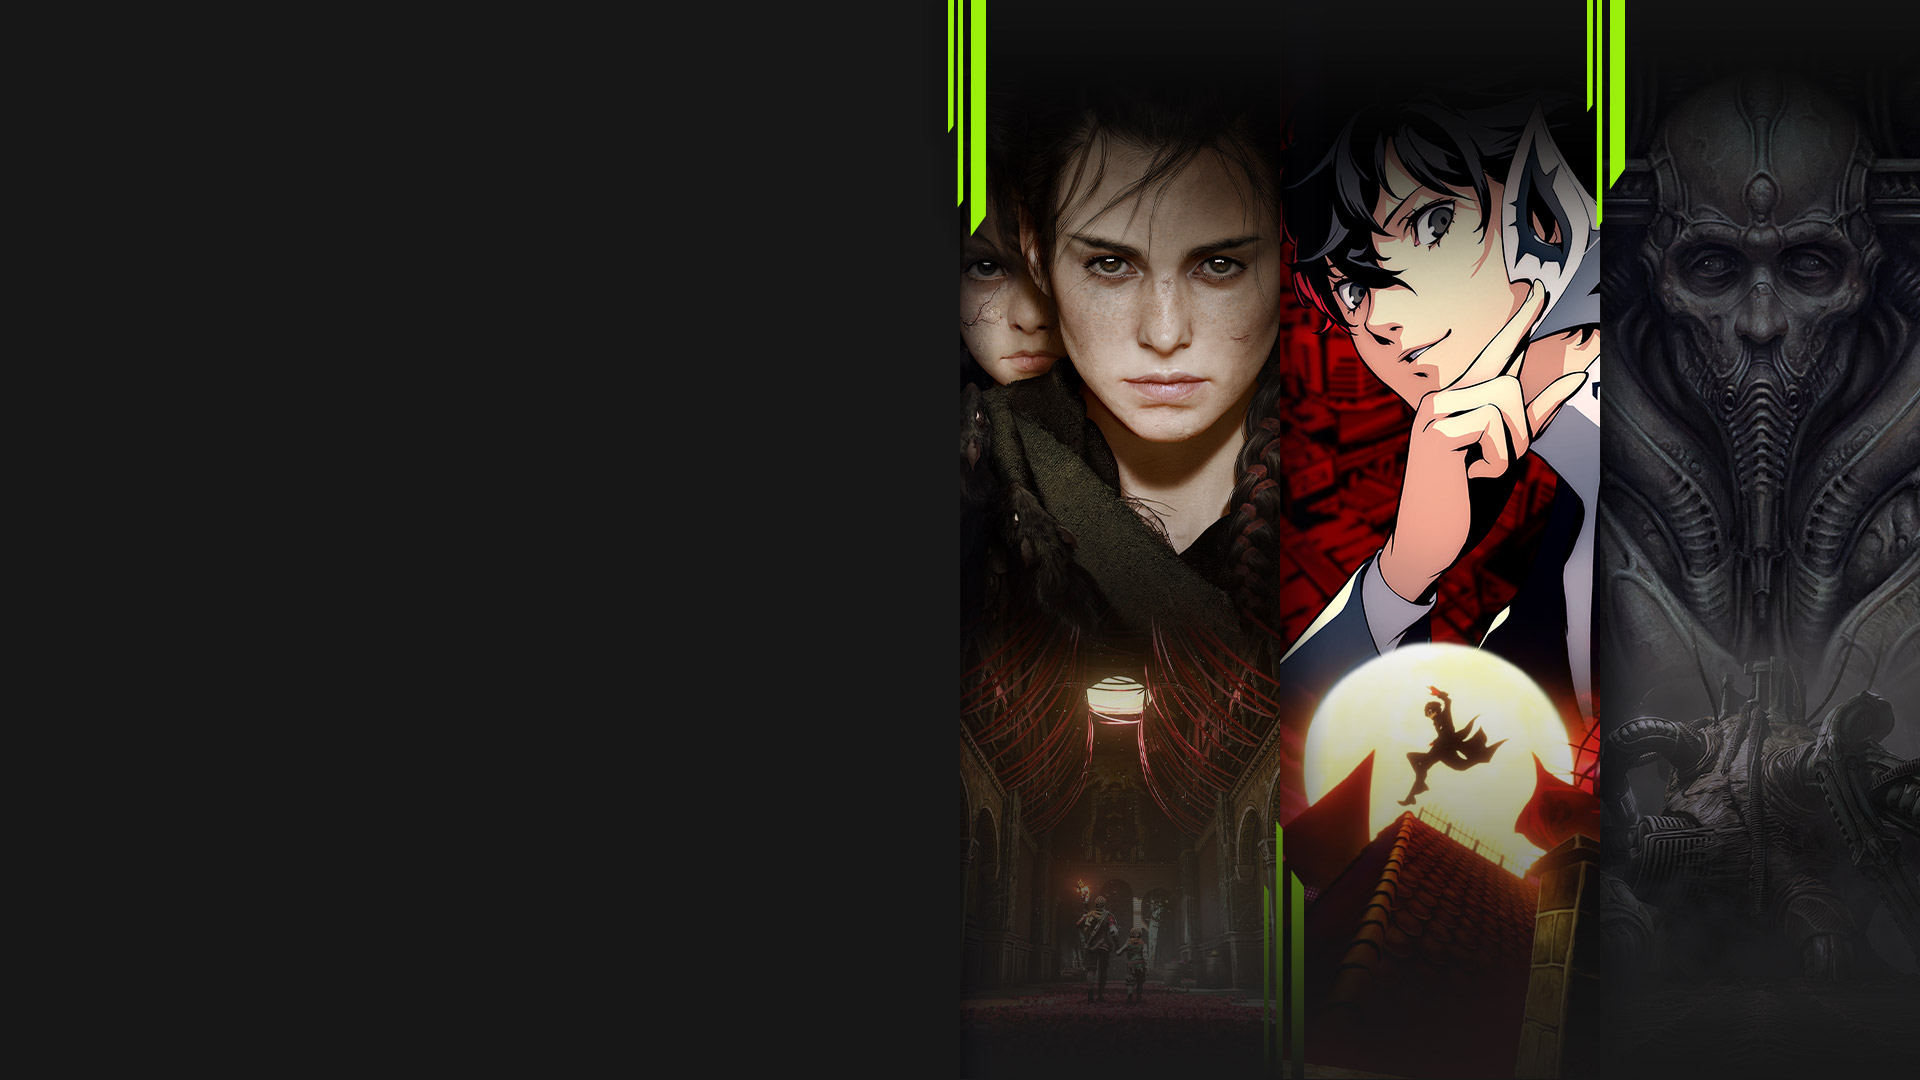 Изображения из игр, доступных в каталоге подписки Xbox Game Pass, в том числе A Plague Tale: Requiem, Persona 5 Royal, Scorn и Chivalry 2